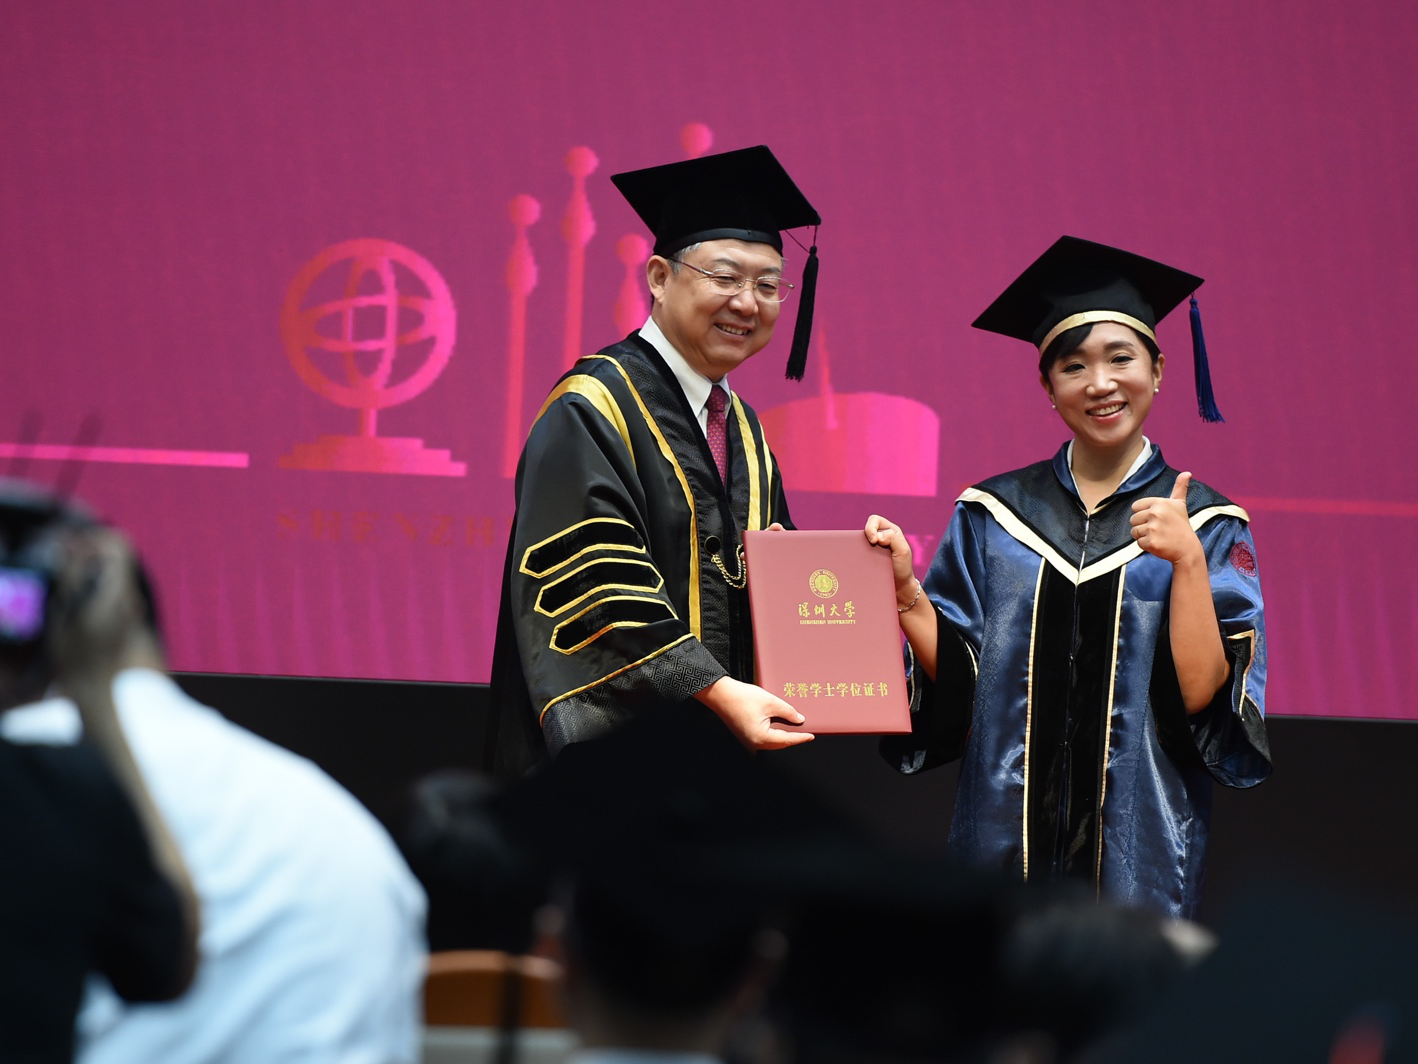 深圳大学举行2021年毕业典礼：6724名应届本科毕业生、2710名研究生